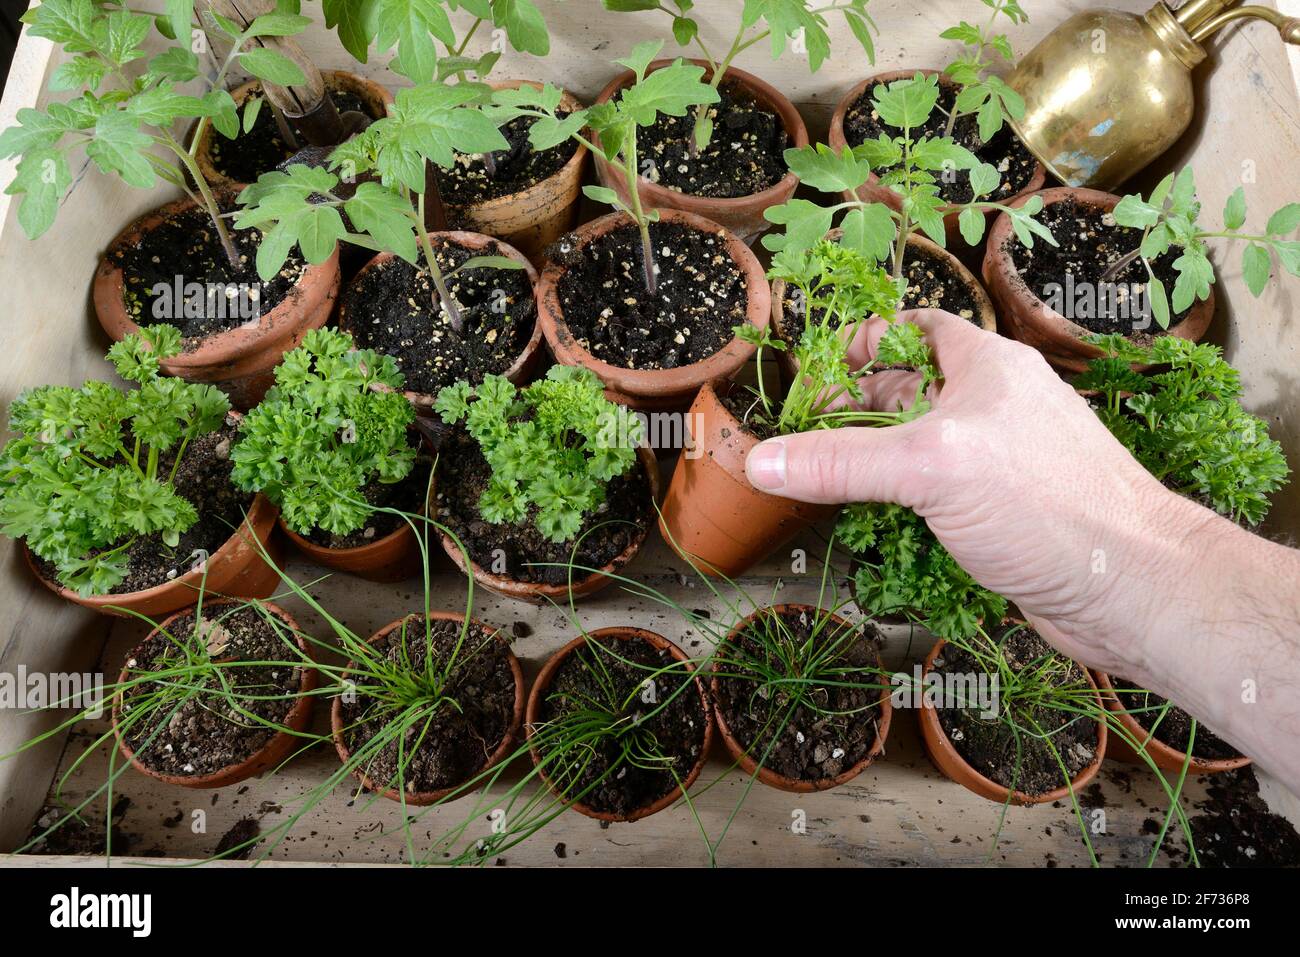 Erba cipollina (Allium schoenoprasum), prezzemolo (Petroselinum crispum), pomodori (Solanum lycopersicum), coltivazione di piante Foto Stock